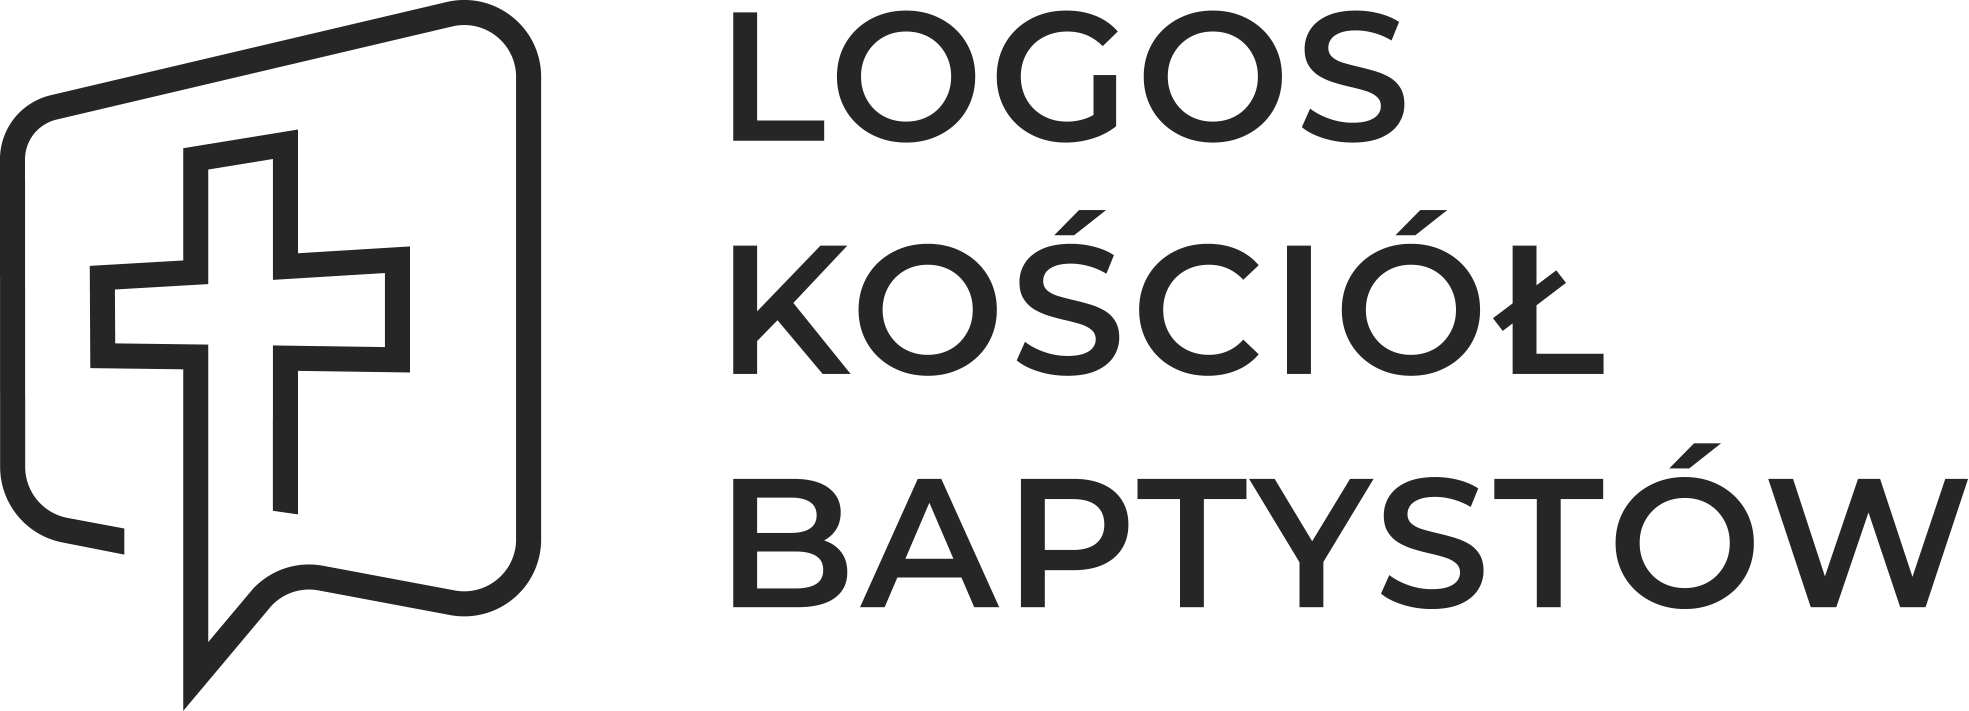 Kościół Chrześcijan Baptystów Logos w Bydgoszczy